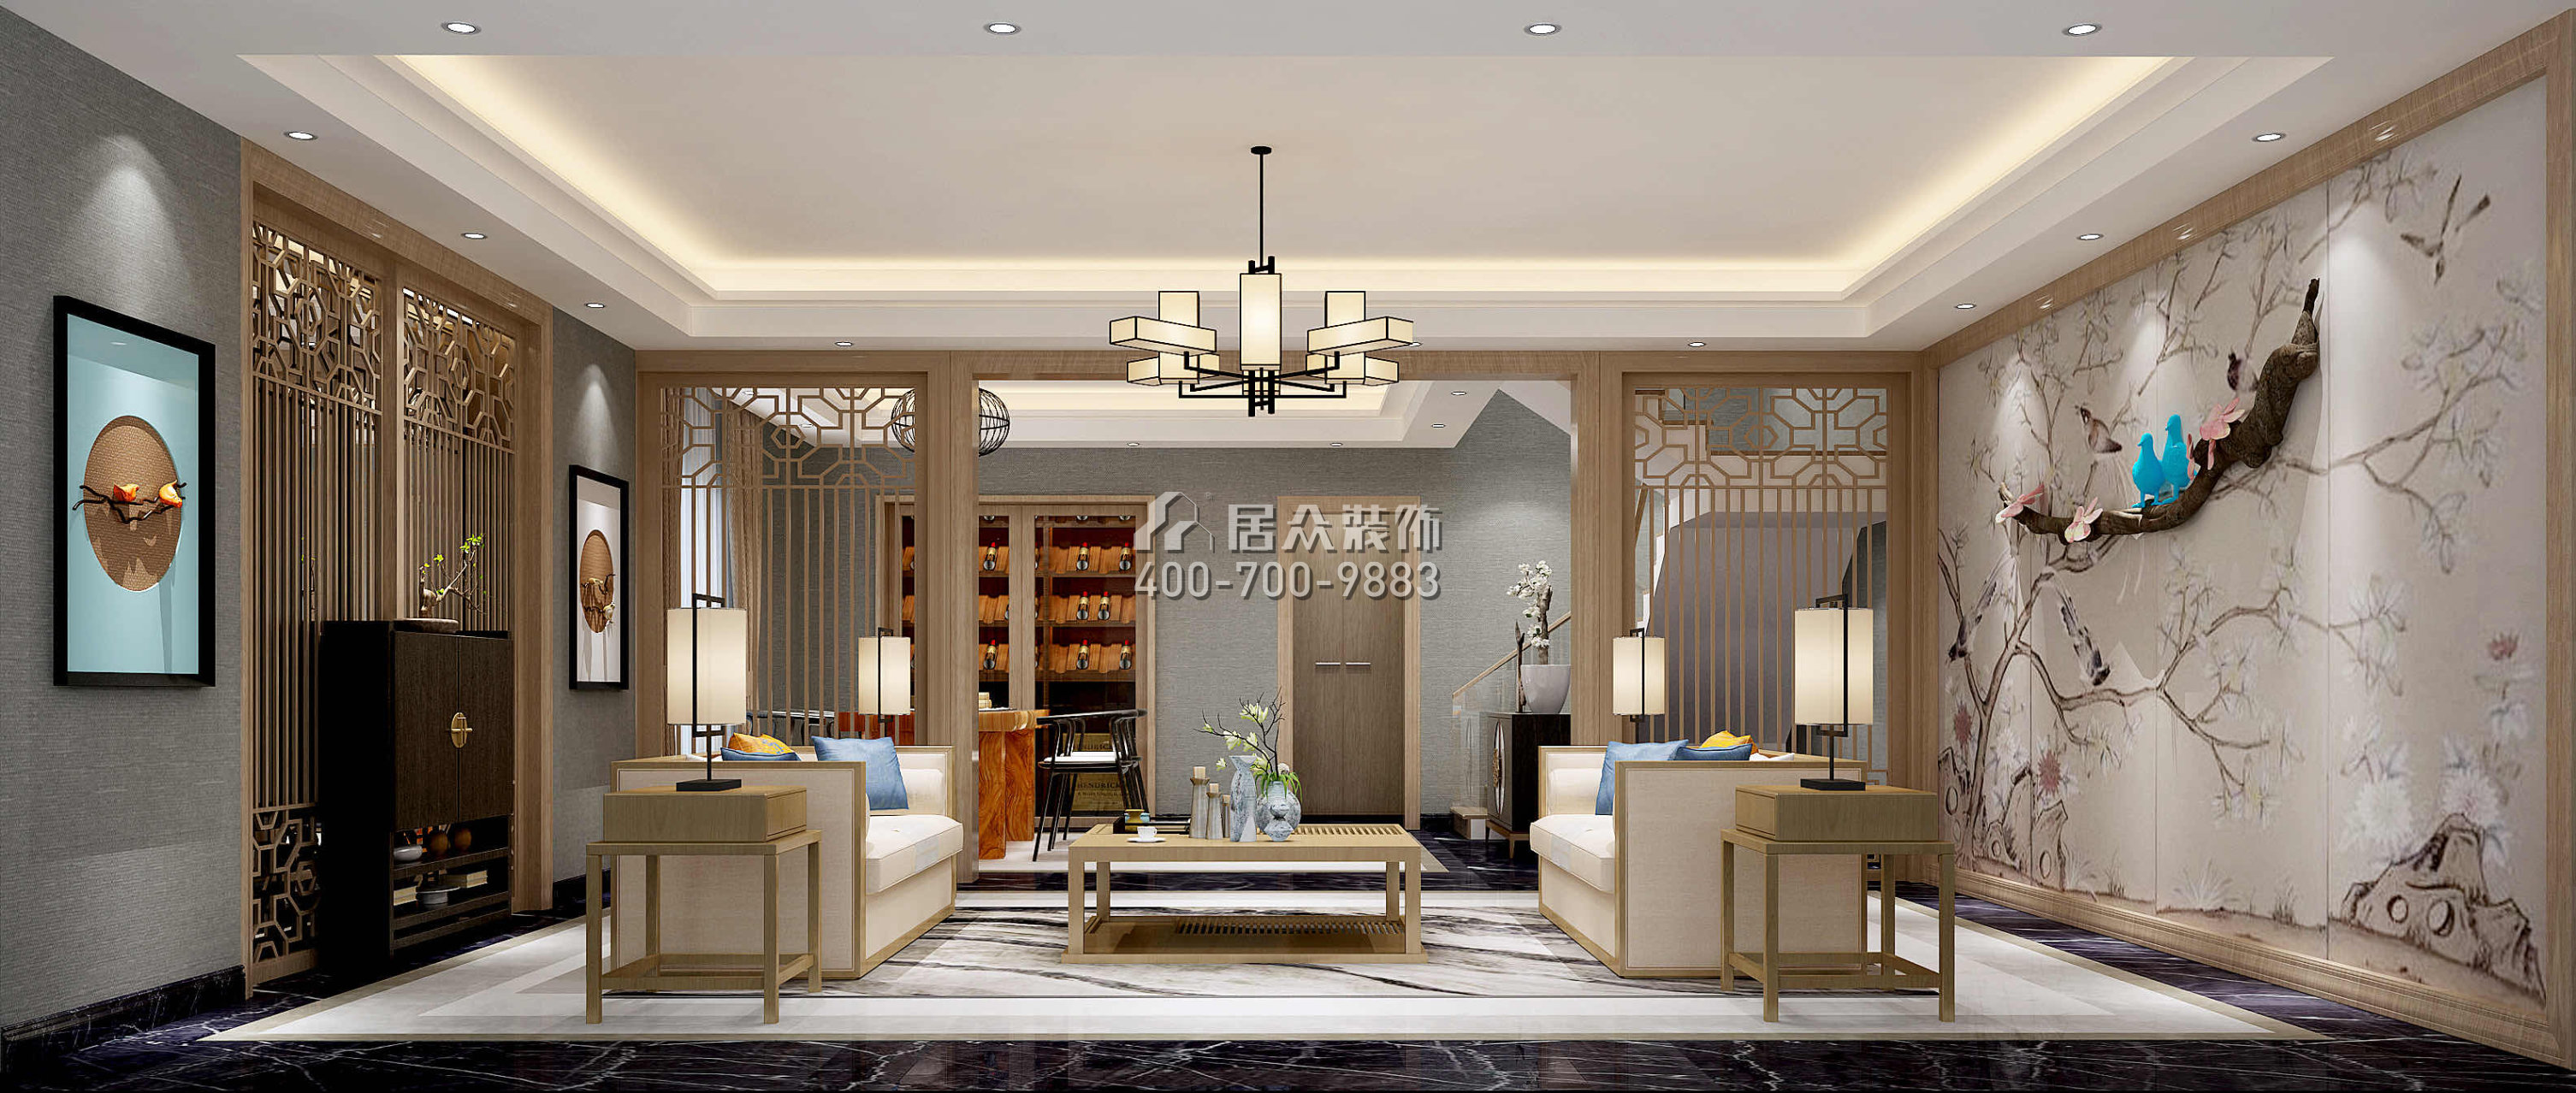 万科棠樾450平方米中式风格别墅户型茶室装修效果图